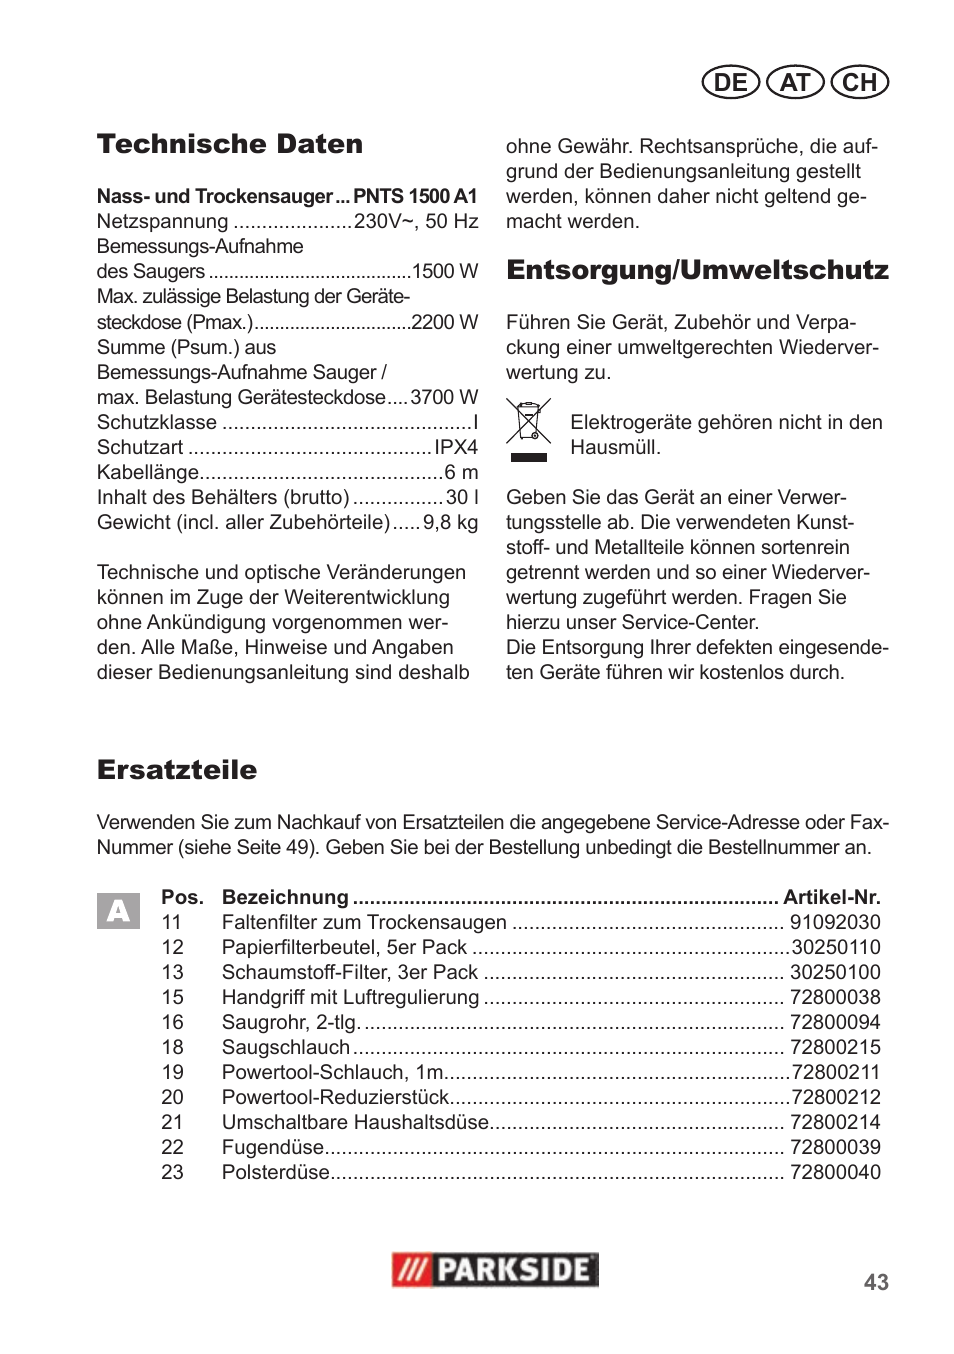 Technische daten, Entsorgung/umweltschutz, Ersatzteile | Parkside PNTS 1500  A1 User Manual | Page 43 / 50 | Original mode